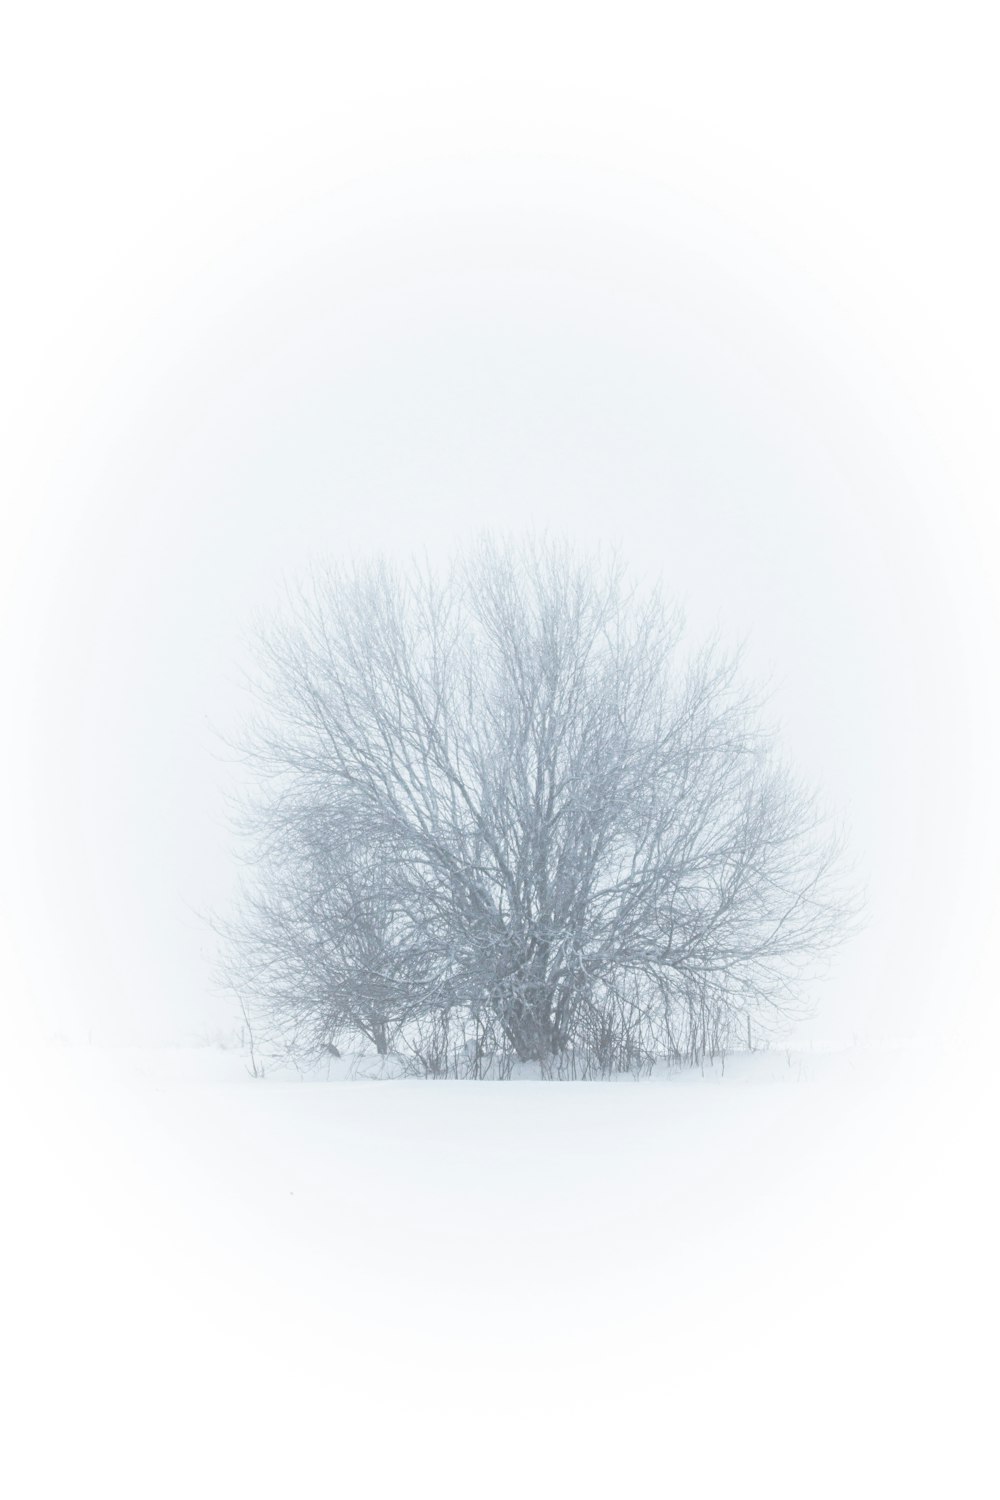 uma árvore solitária em um campo coberto de neve